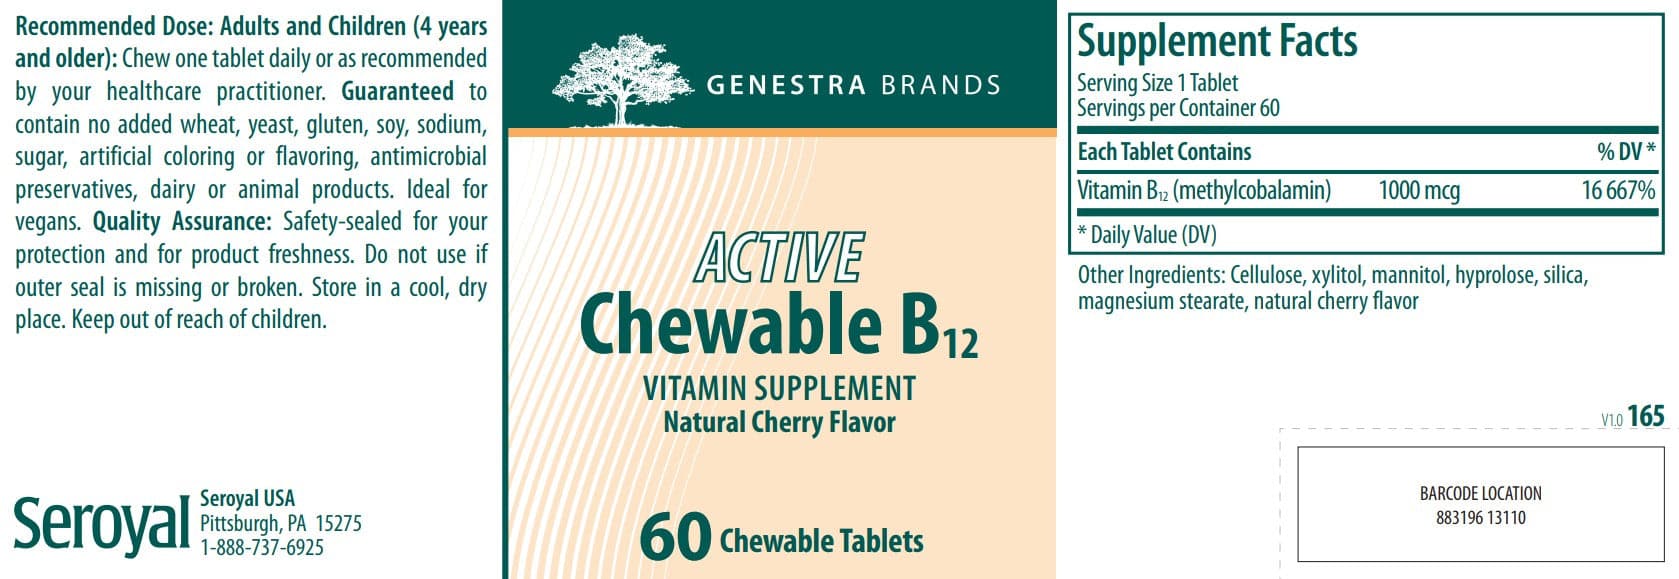 Genestra Brands Active Chewable B12